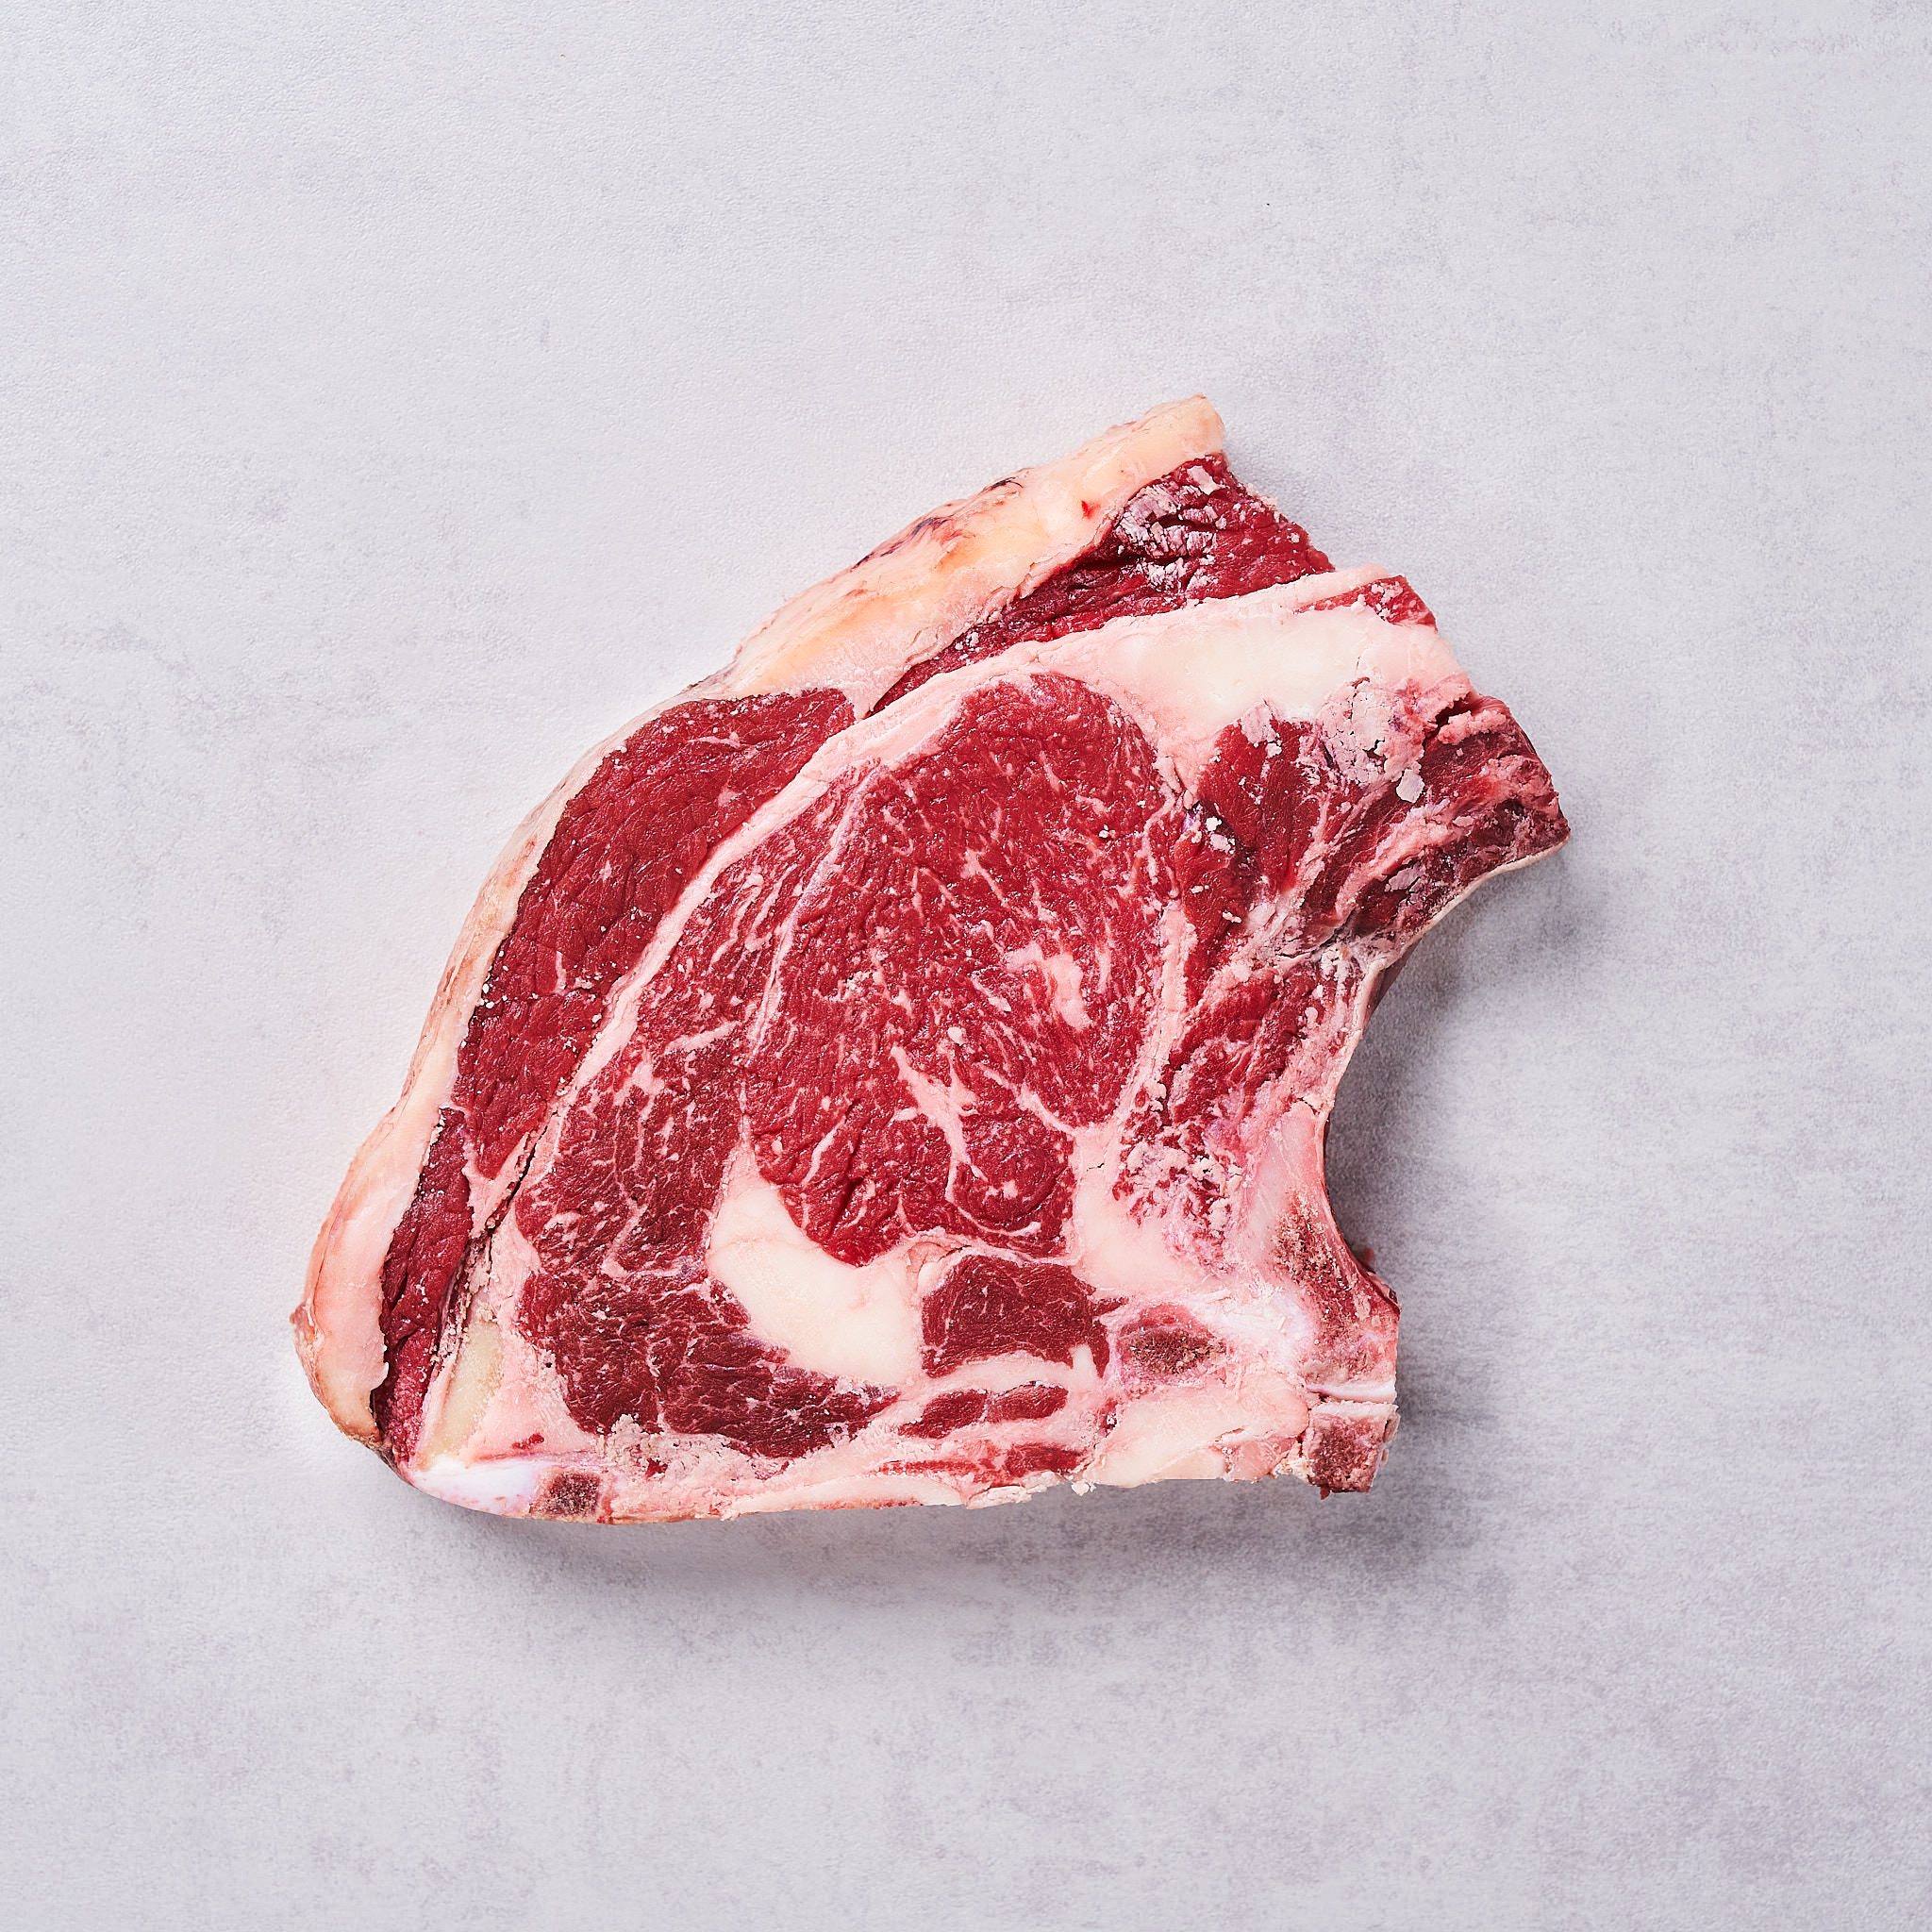 Rib Eye Steak on Bone von der österreichischen Kalbin